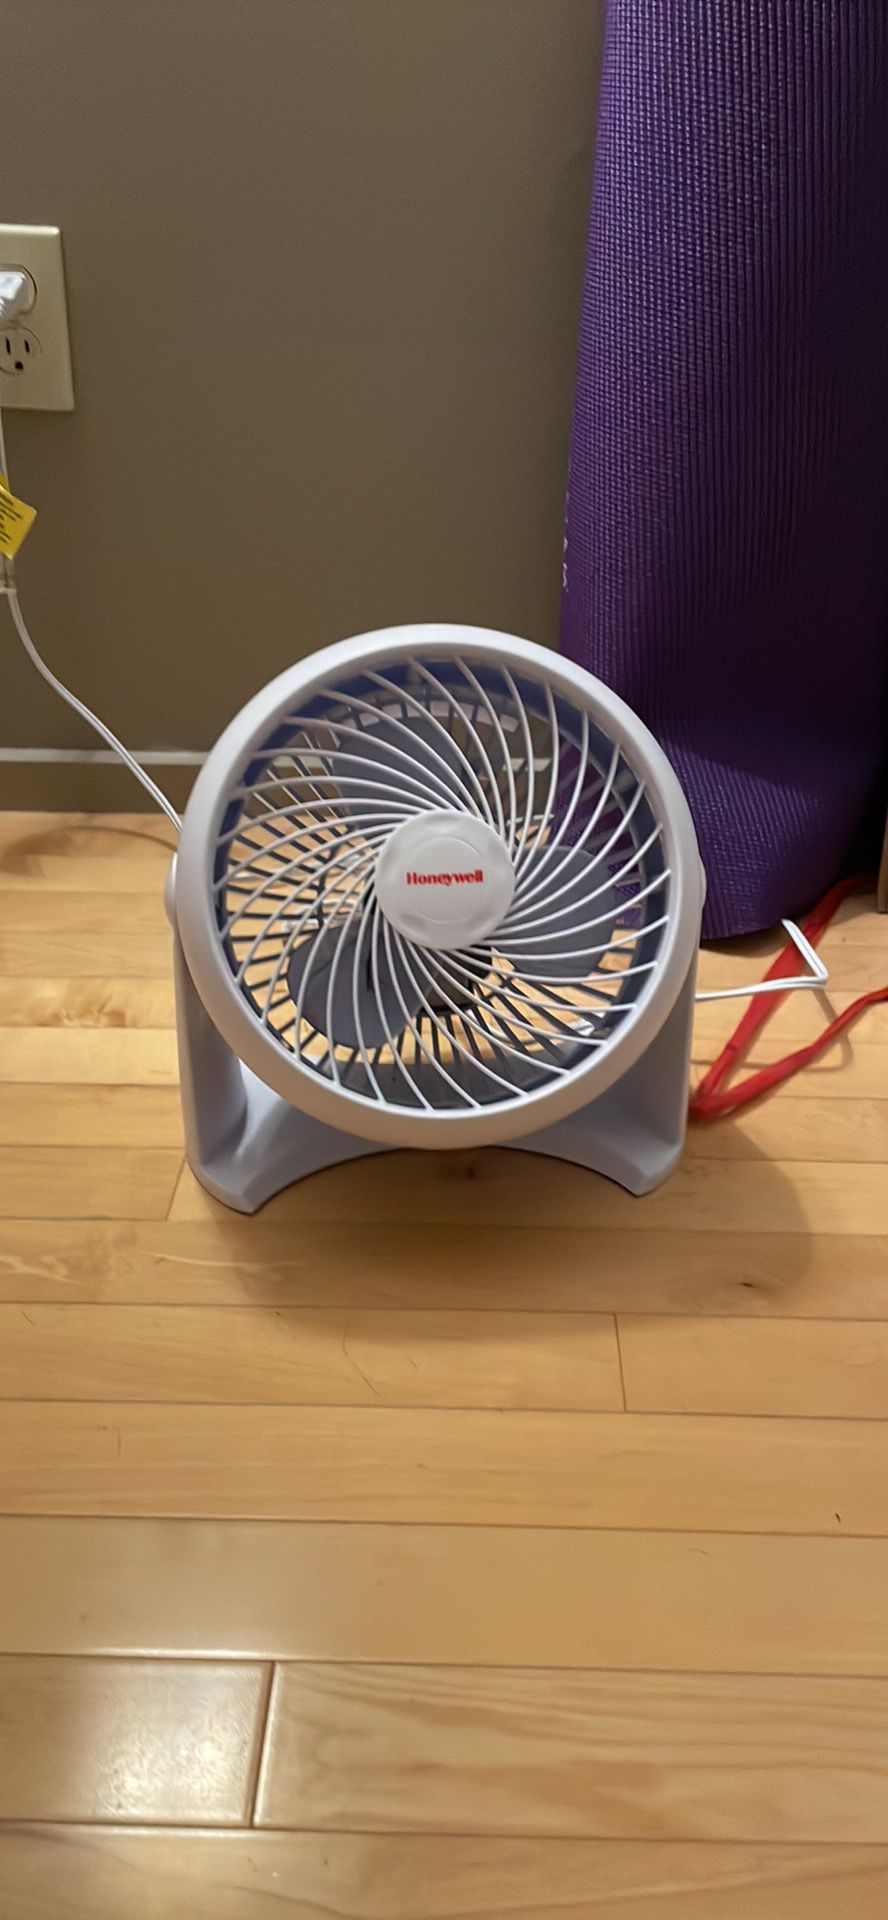 Honeywell Turbo force Fan